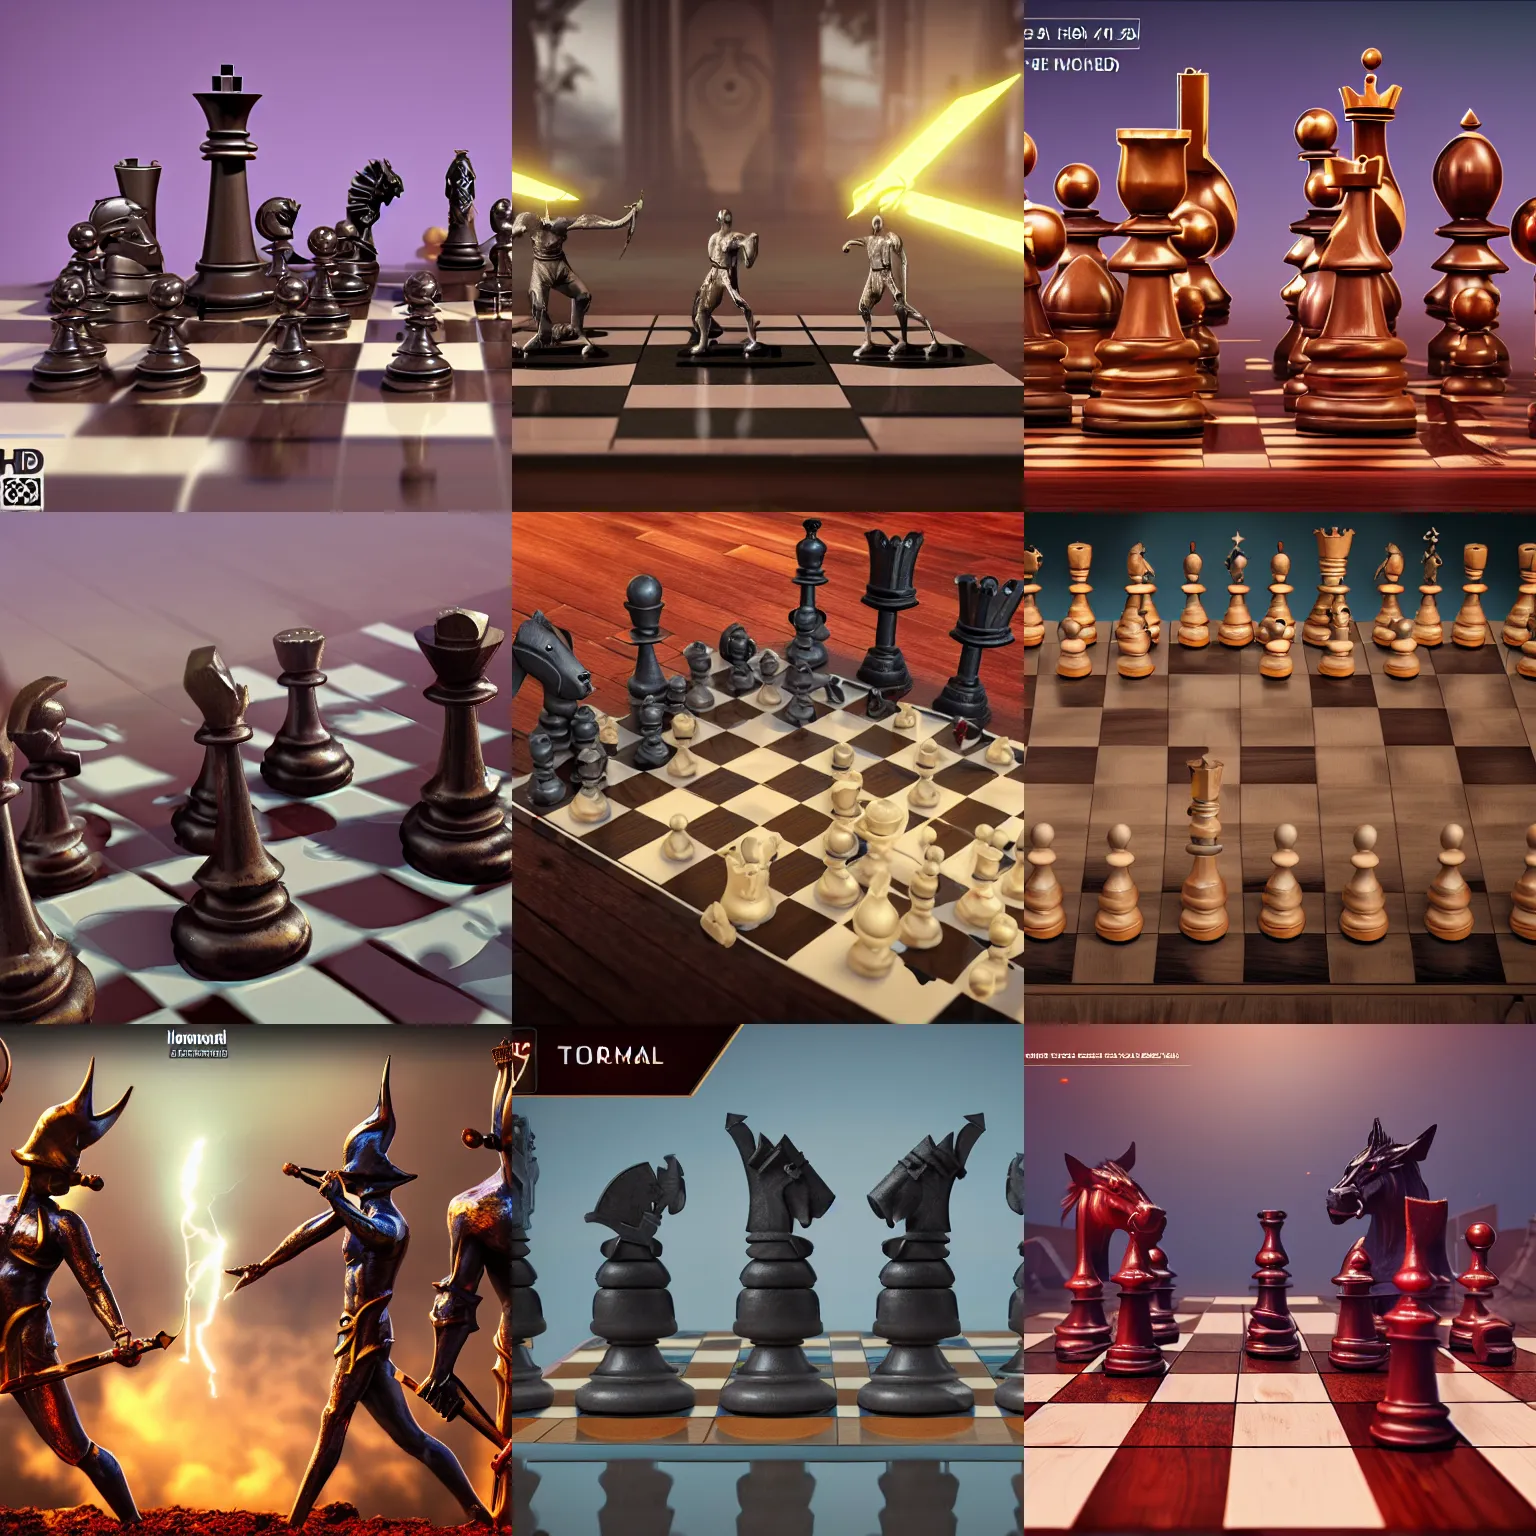 Chess Boxing by Abdulaziz Aljasmi